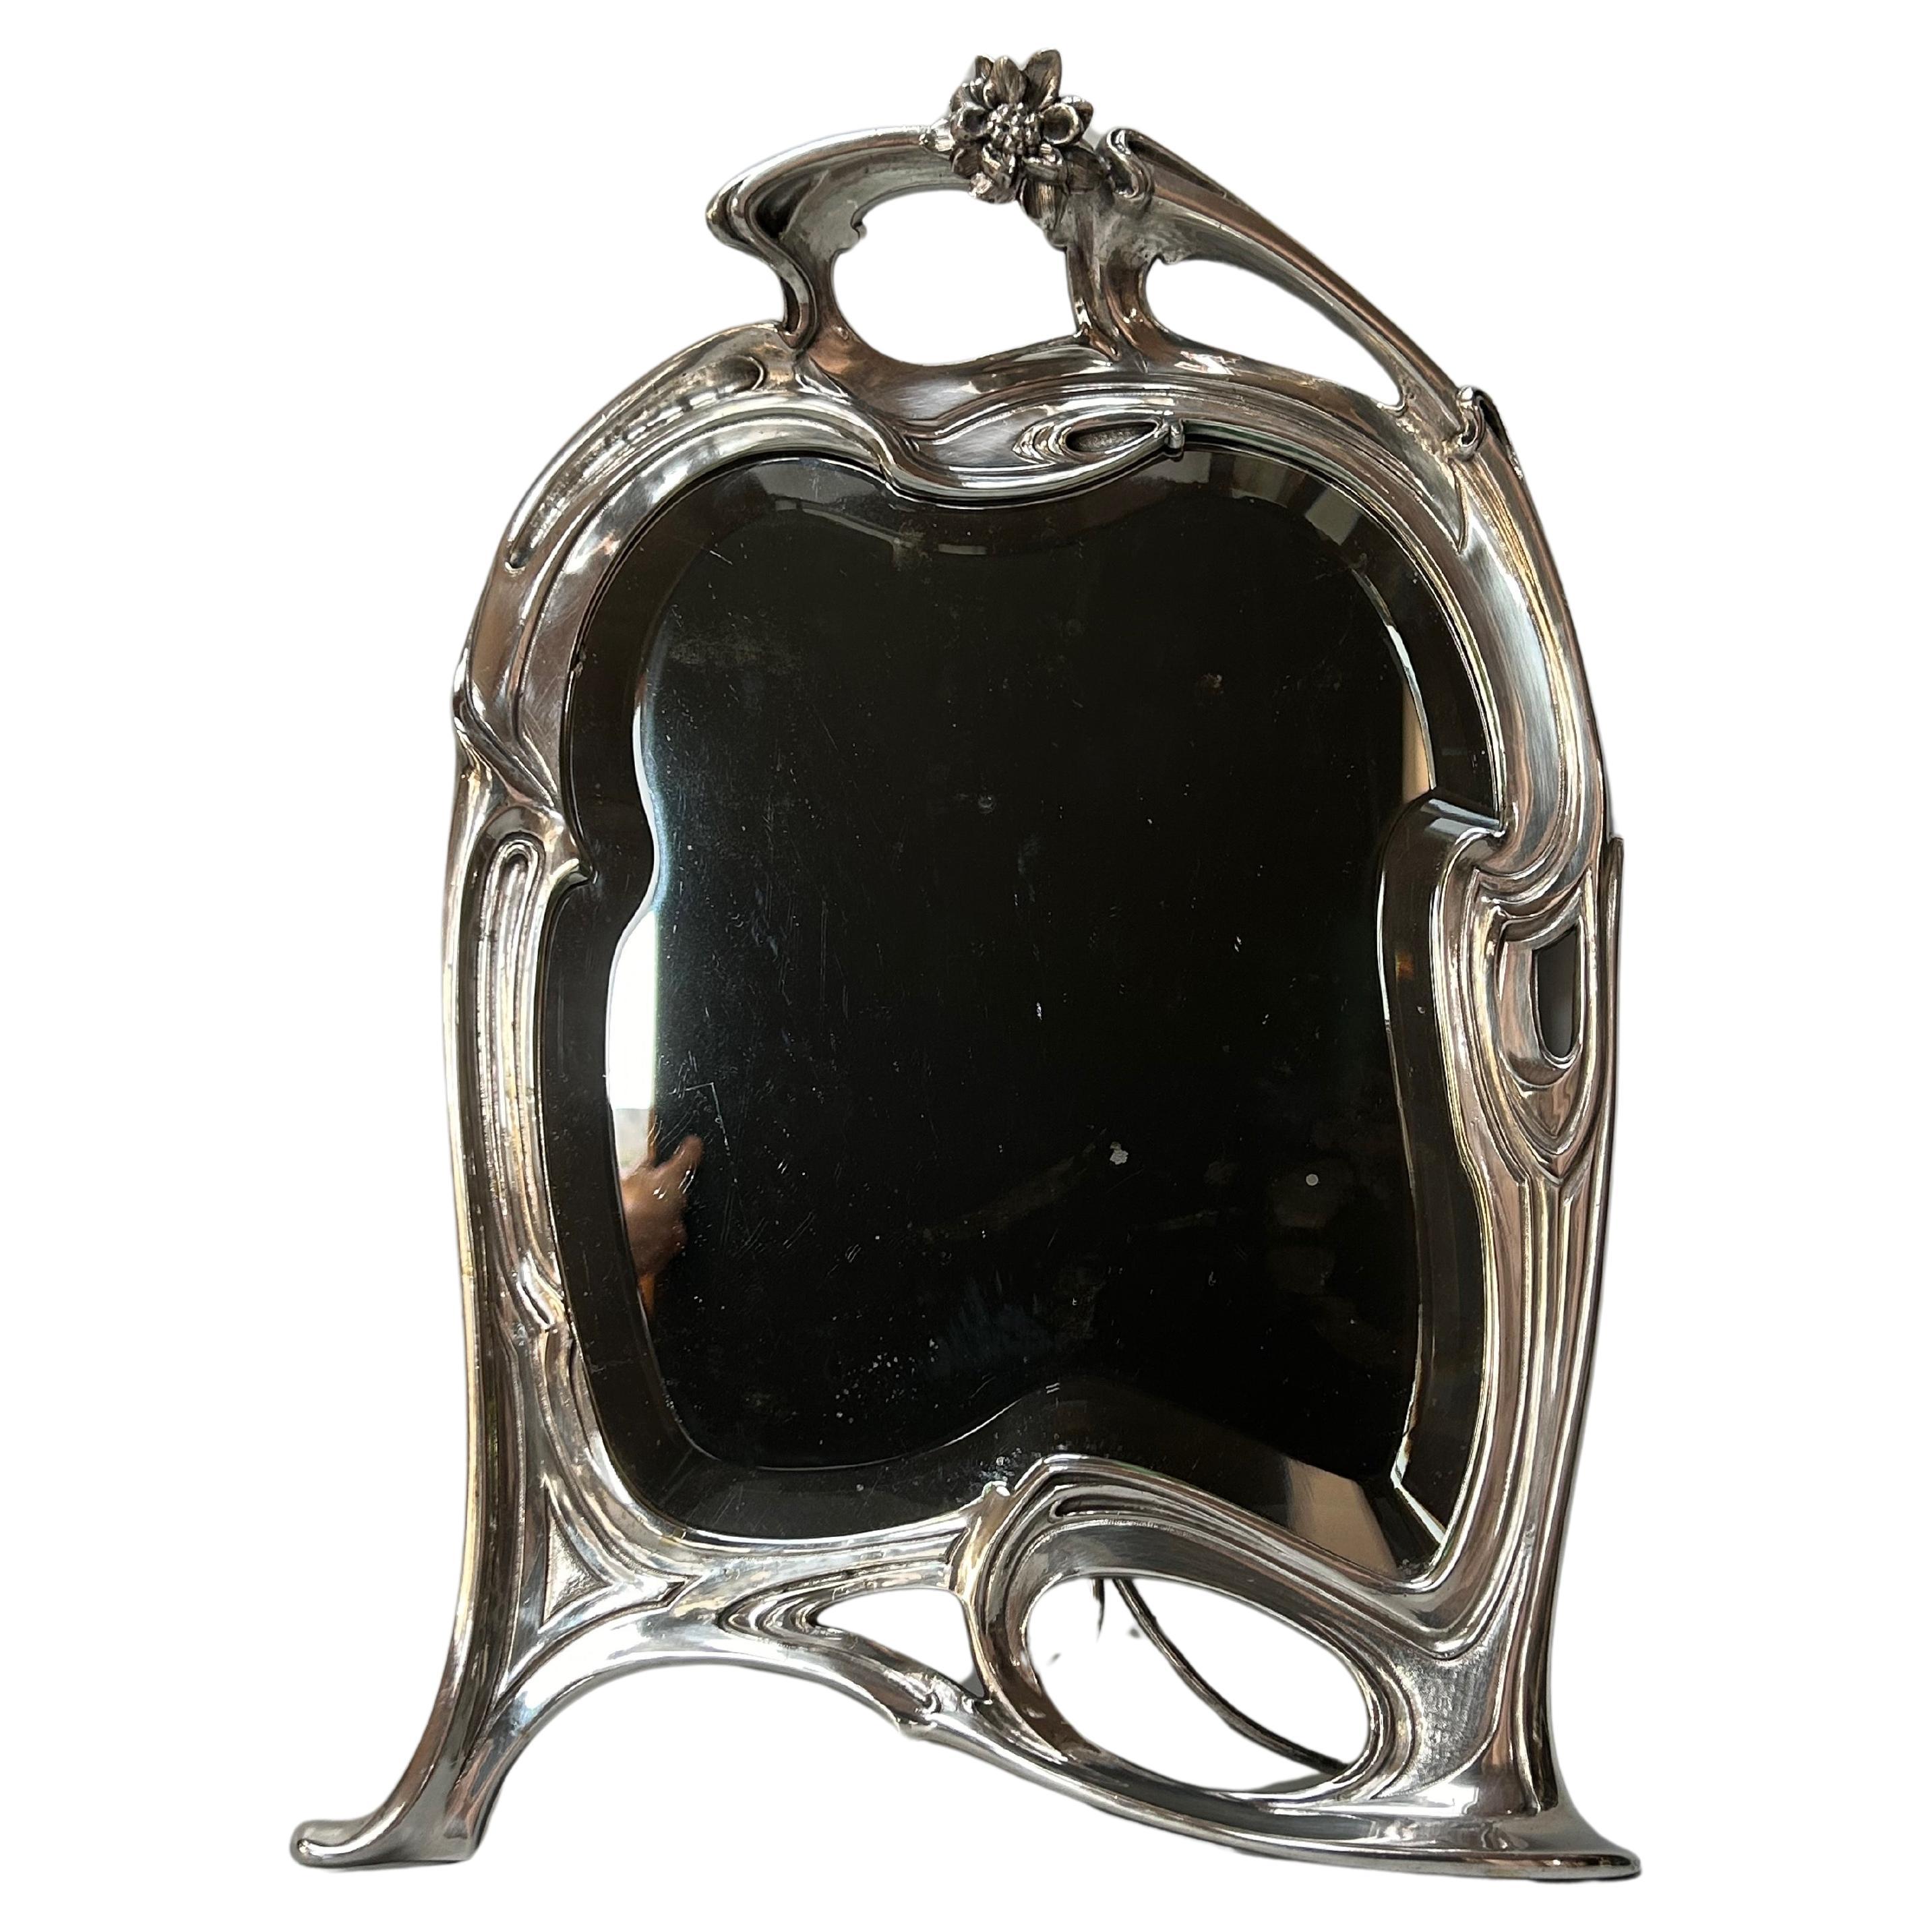 Espejo Art Nouveau de bronce plateado hacia 1900.
En muy buen estado.
No hay rastro de sellos ni marcas.
Este espejo es auténtico.
Hay que señalar unas pequeñas manchas en el espejo.

Altura: 46,5 cm
Anchura: 32 cm
Profundidad desplegada 21 cm
Peso: